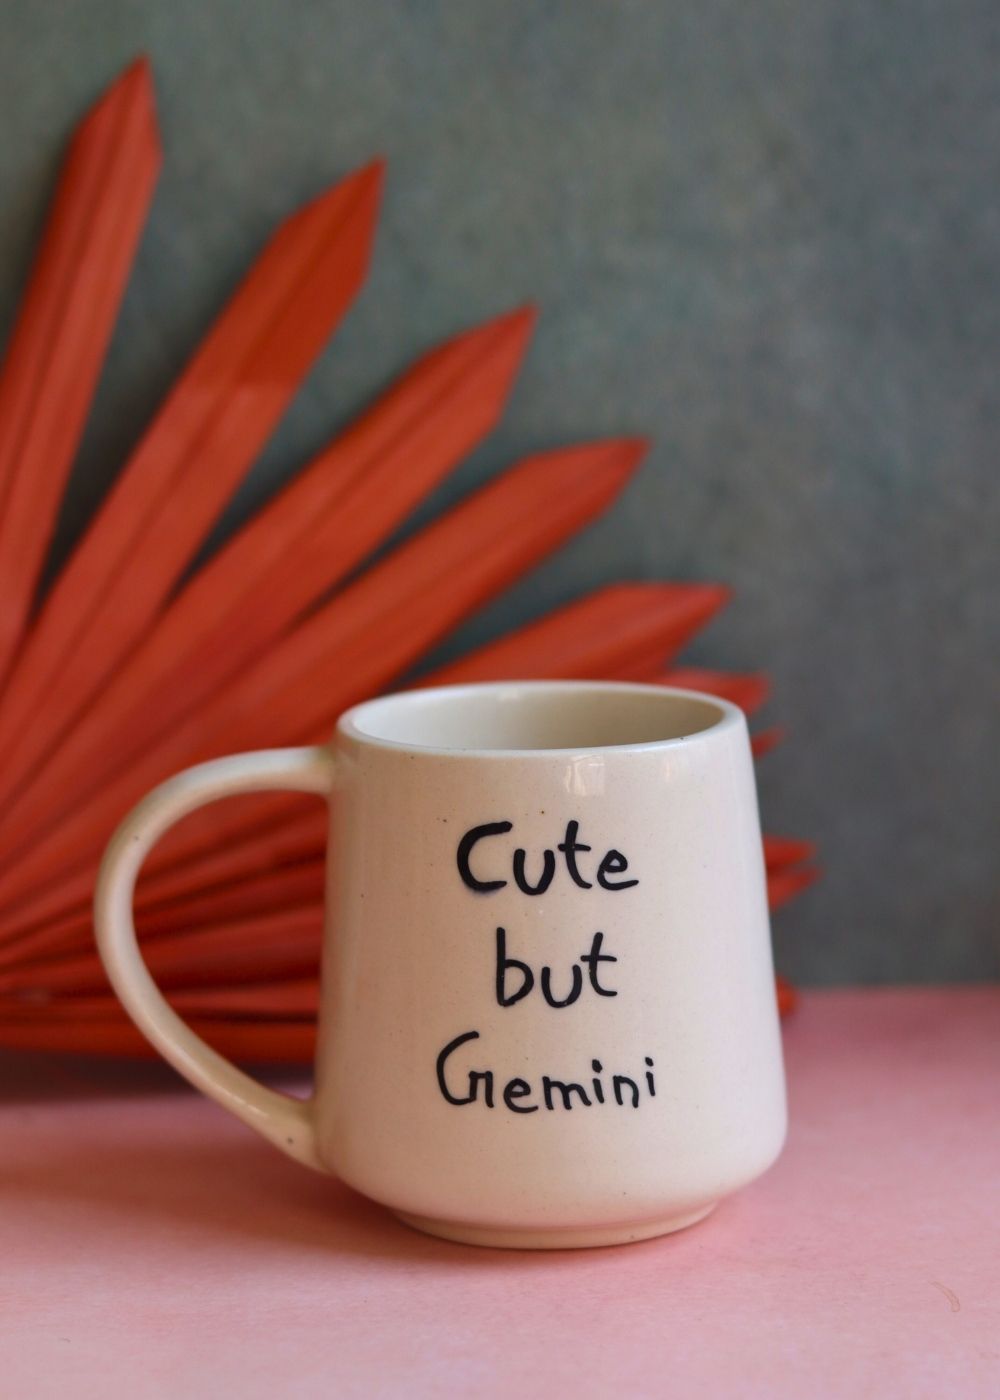 Handmade cut but gemini mug